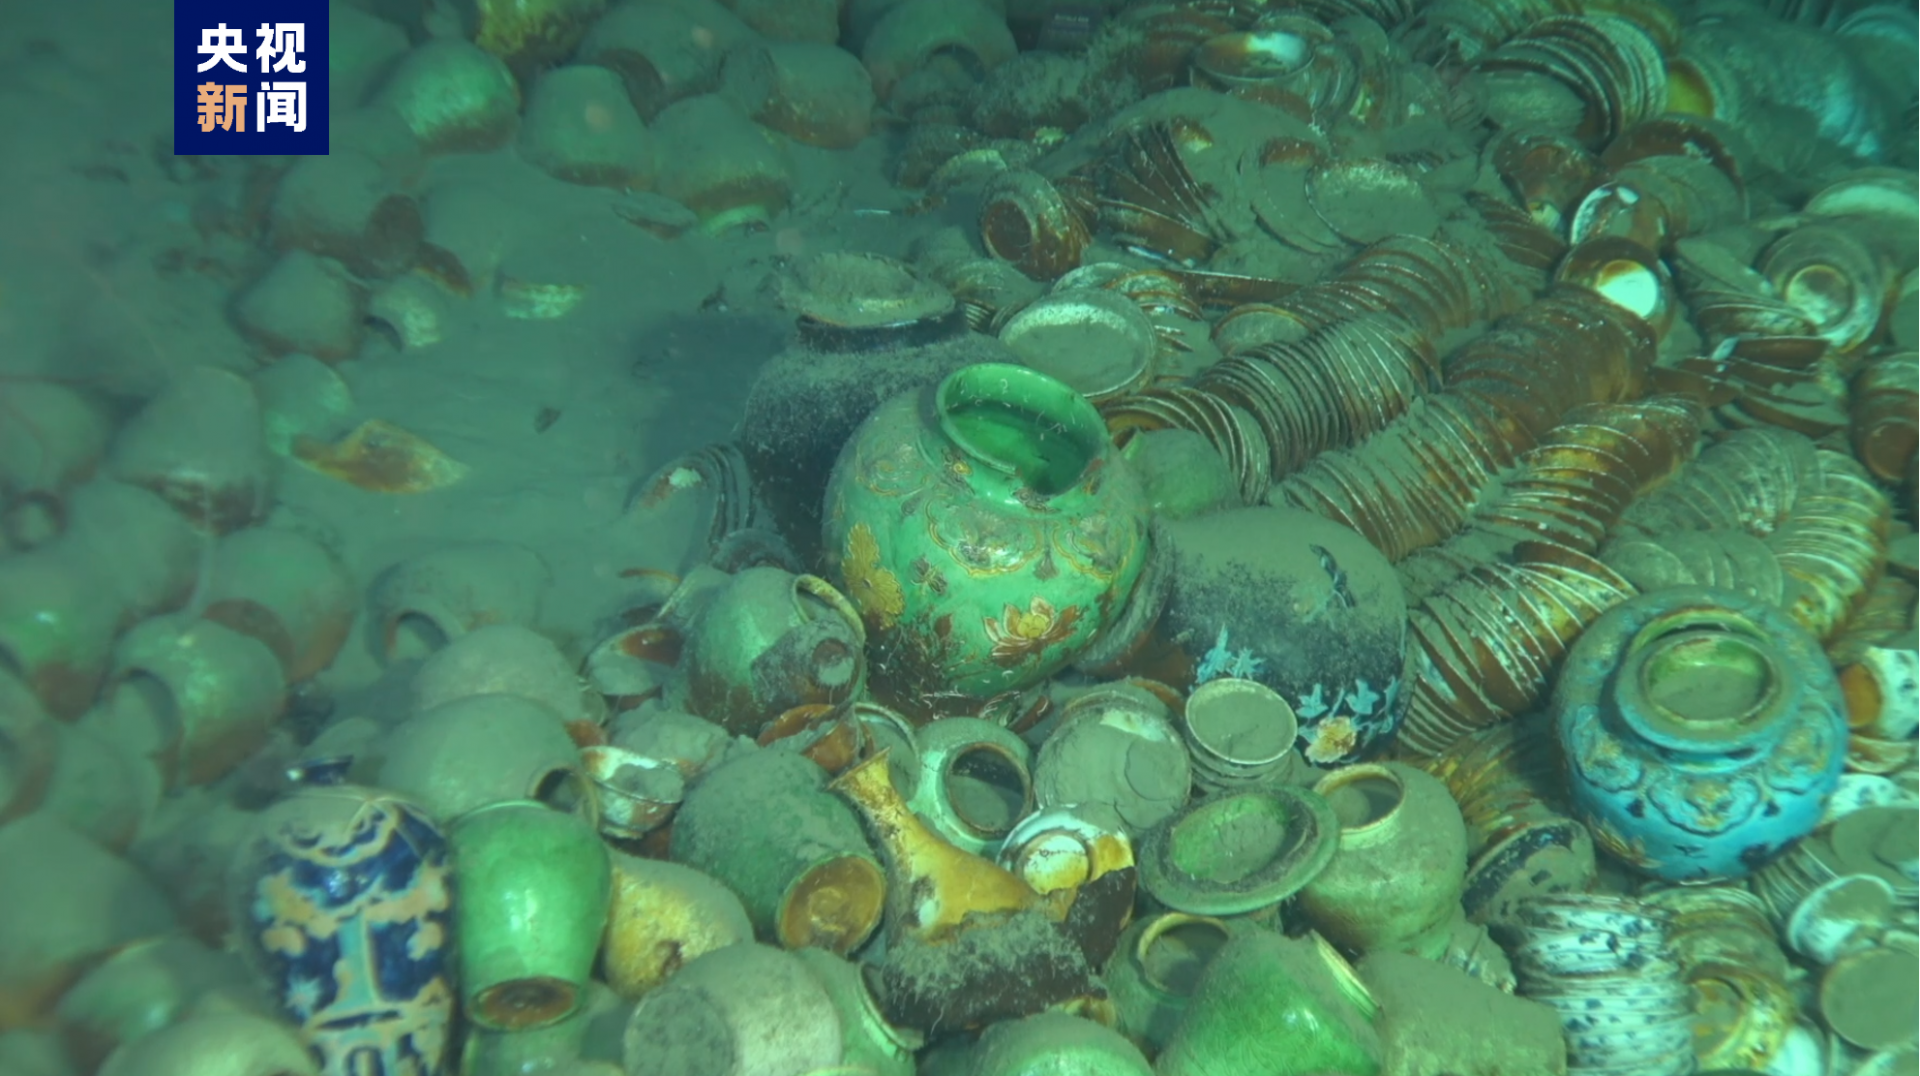 4k影像记录丨水下千米级深度沉船遗址布放永久测绘基点 载人潜水器深